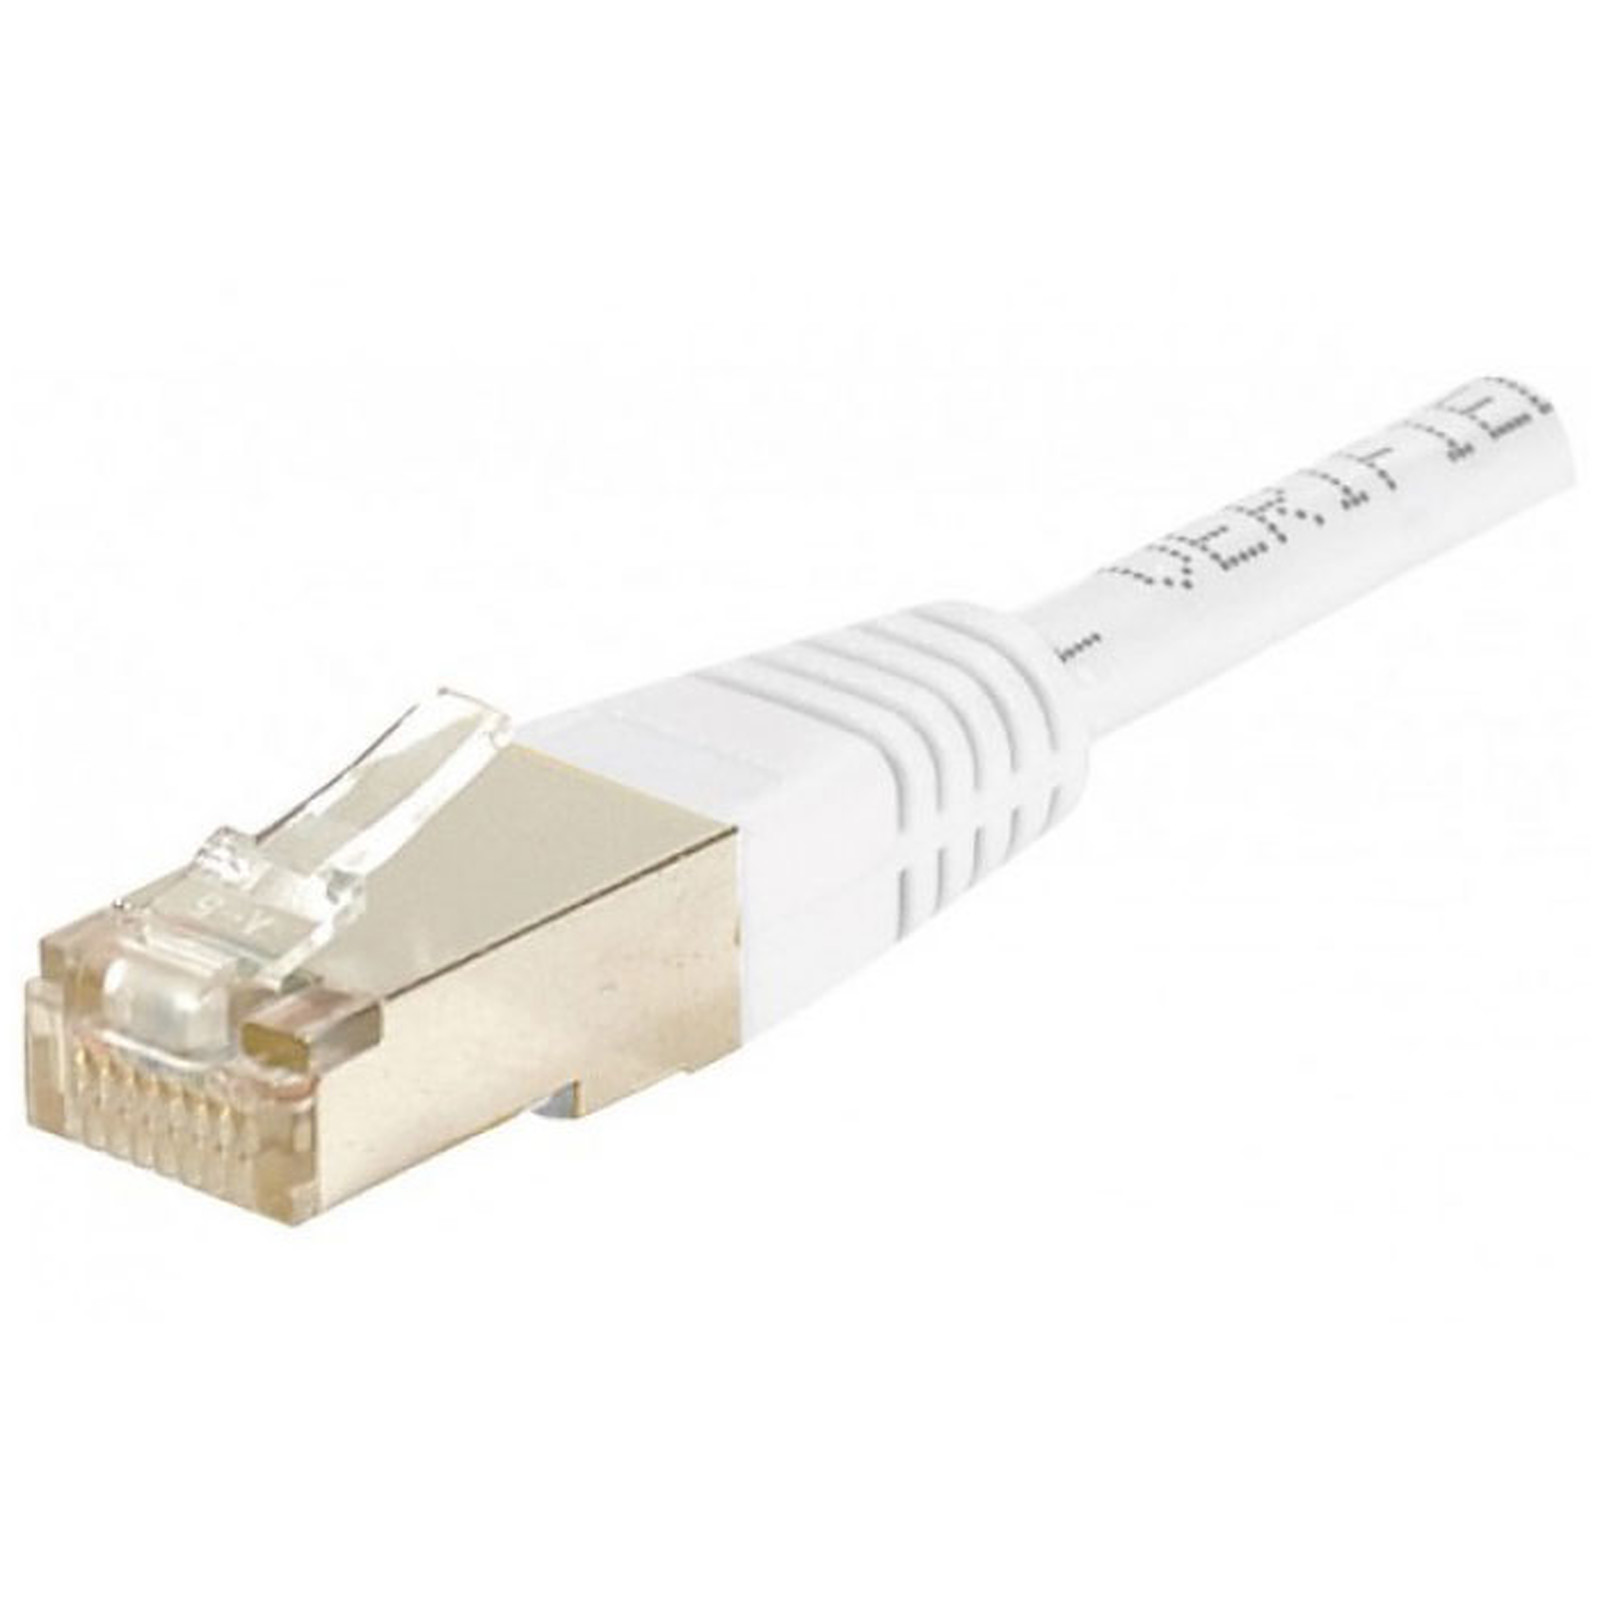 Cable RJ45 categorie 6 F/UTP 3 m (Blanc) - Cable RJ45 Generique